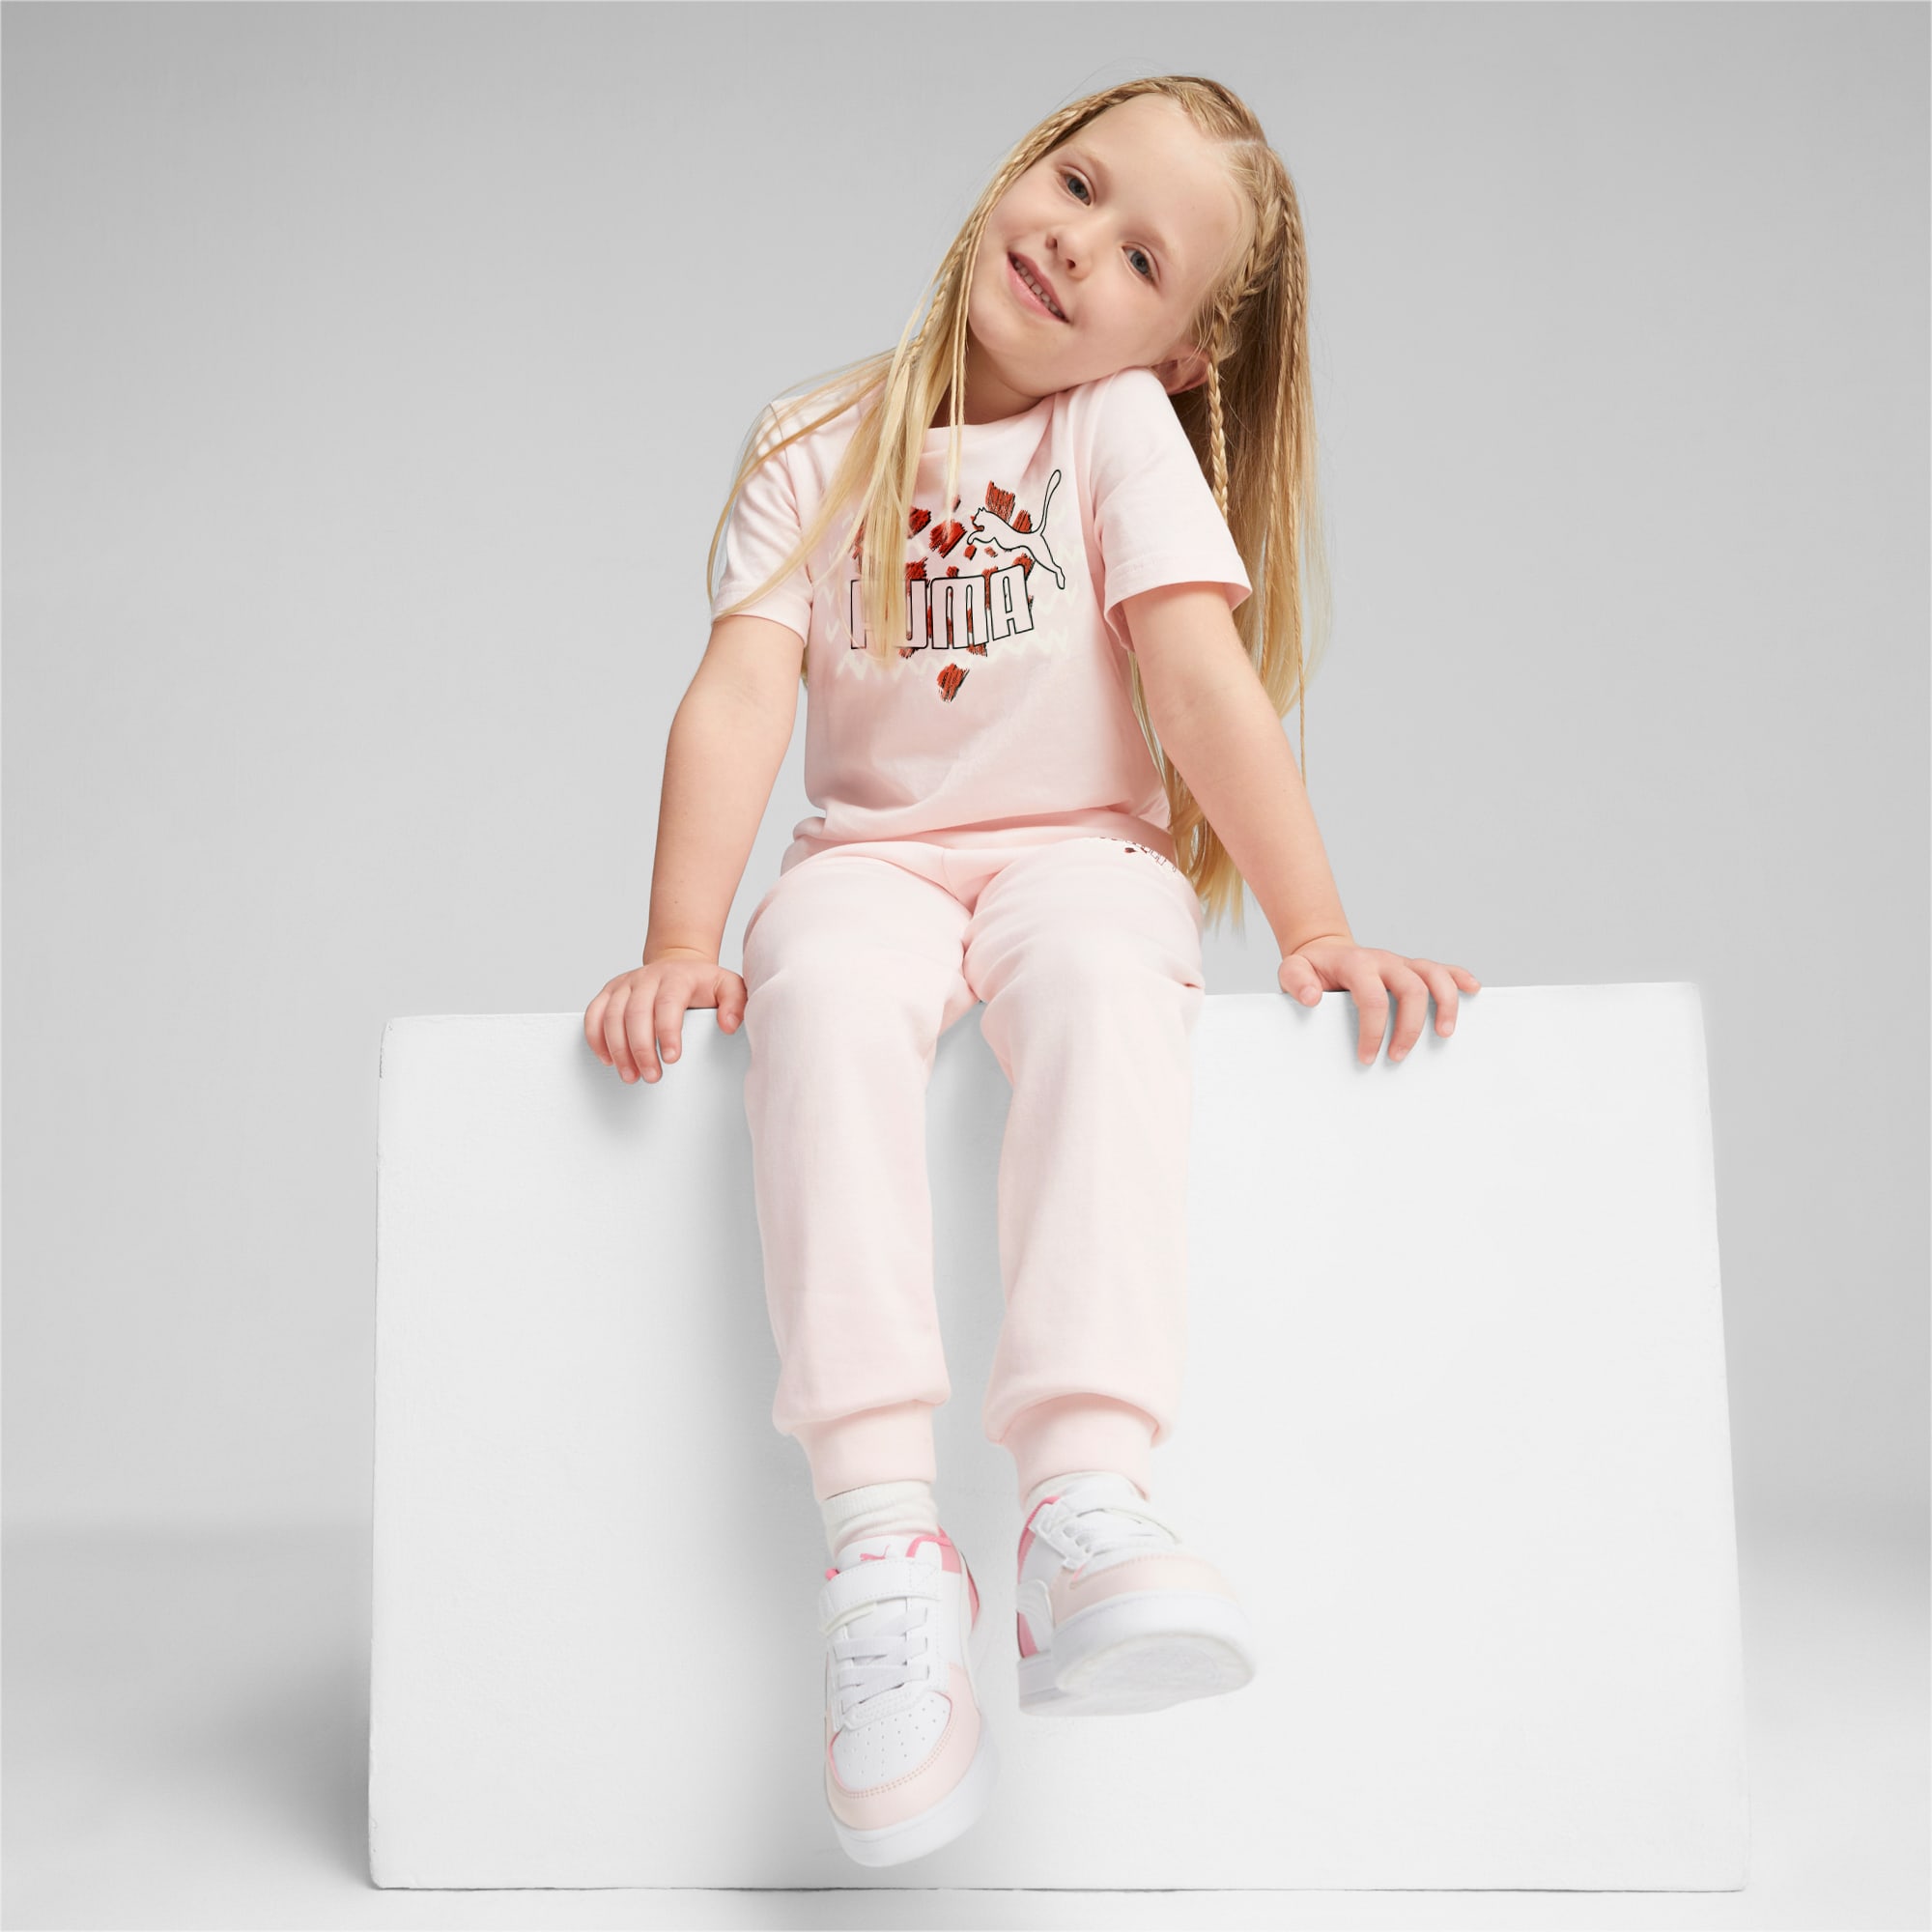 PUMA Essentials Mix Match Kids' T-Shirt, Frosty Pink